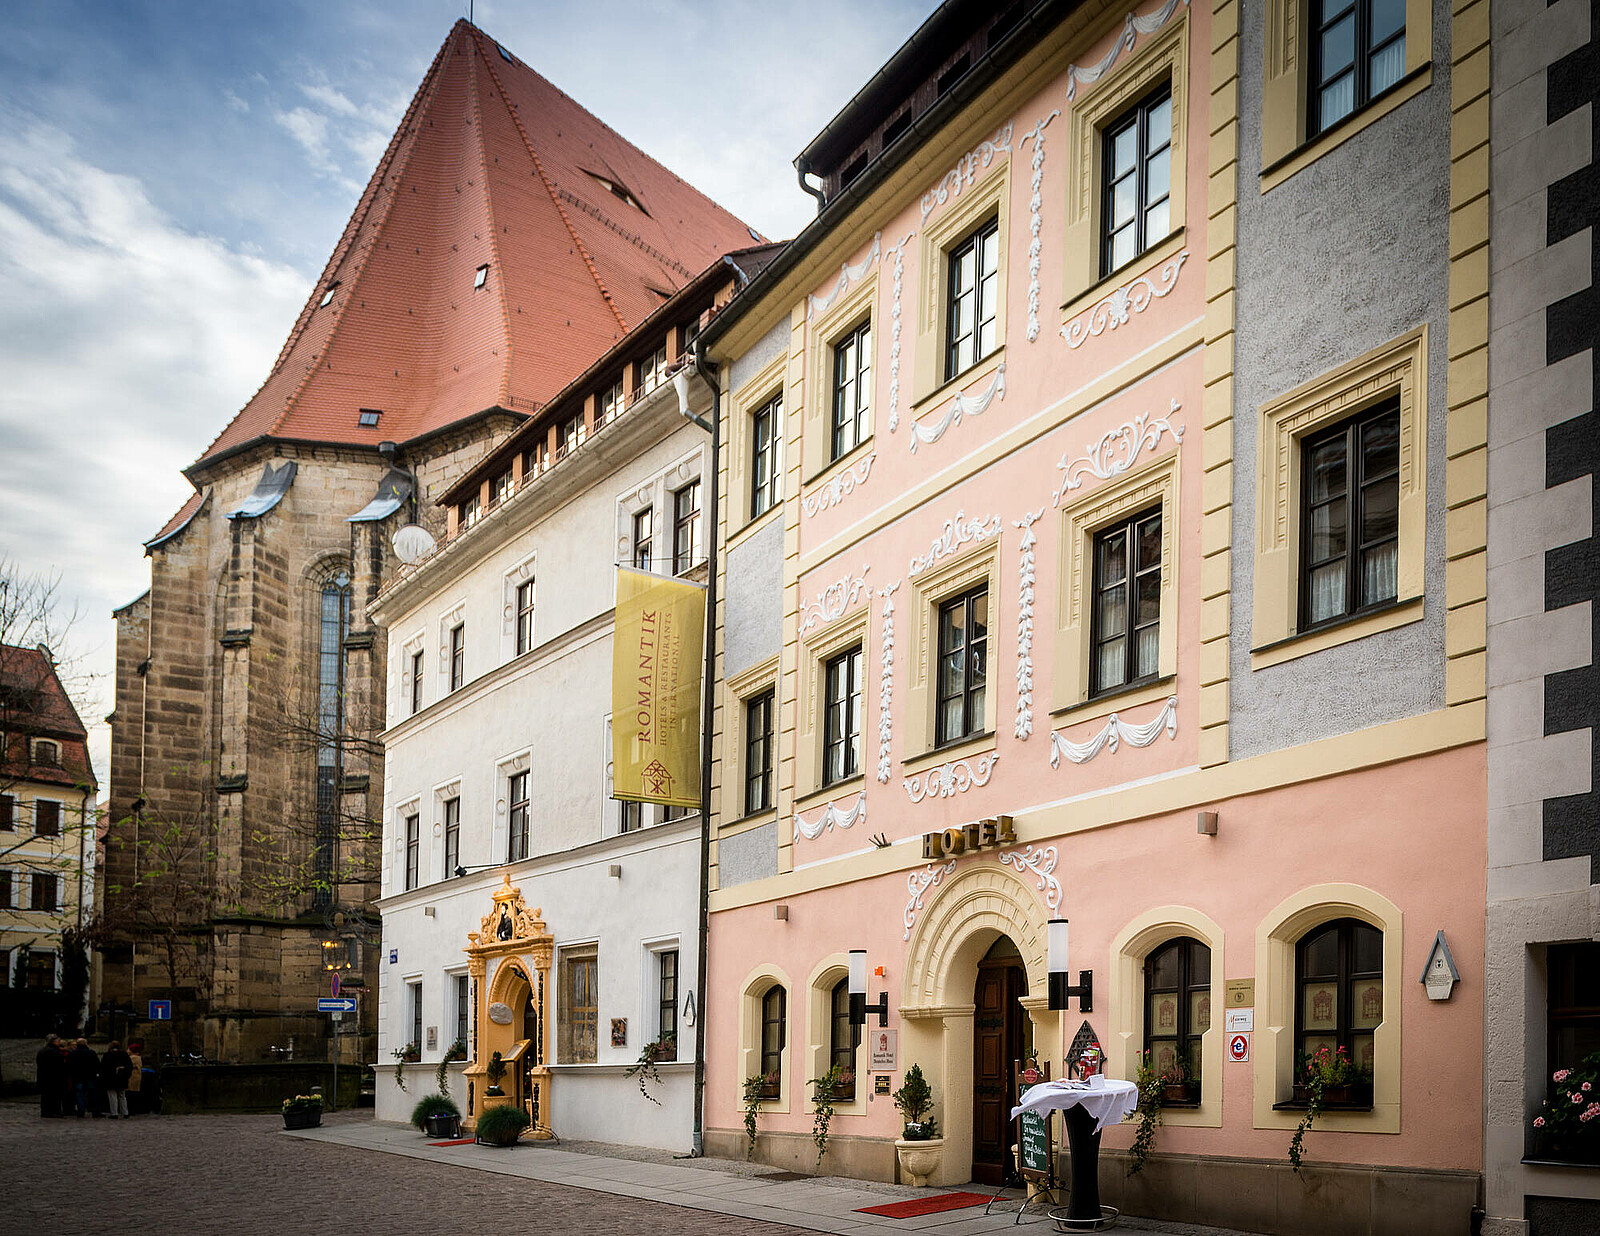 Das historische Städtchen Pirna mit seiner malerischen Altstadt ist auch als "Perle der Sächsischen Schweiz" bekannt. Erleben Sie Gastlichkeit im familiengeführten Hotel Deutsches Haus und genießen den sächsischen Wein mit einer Weinprinzessin.